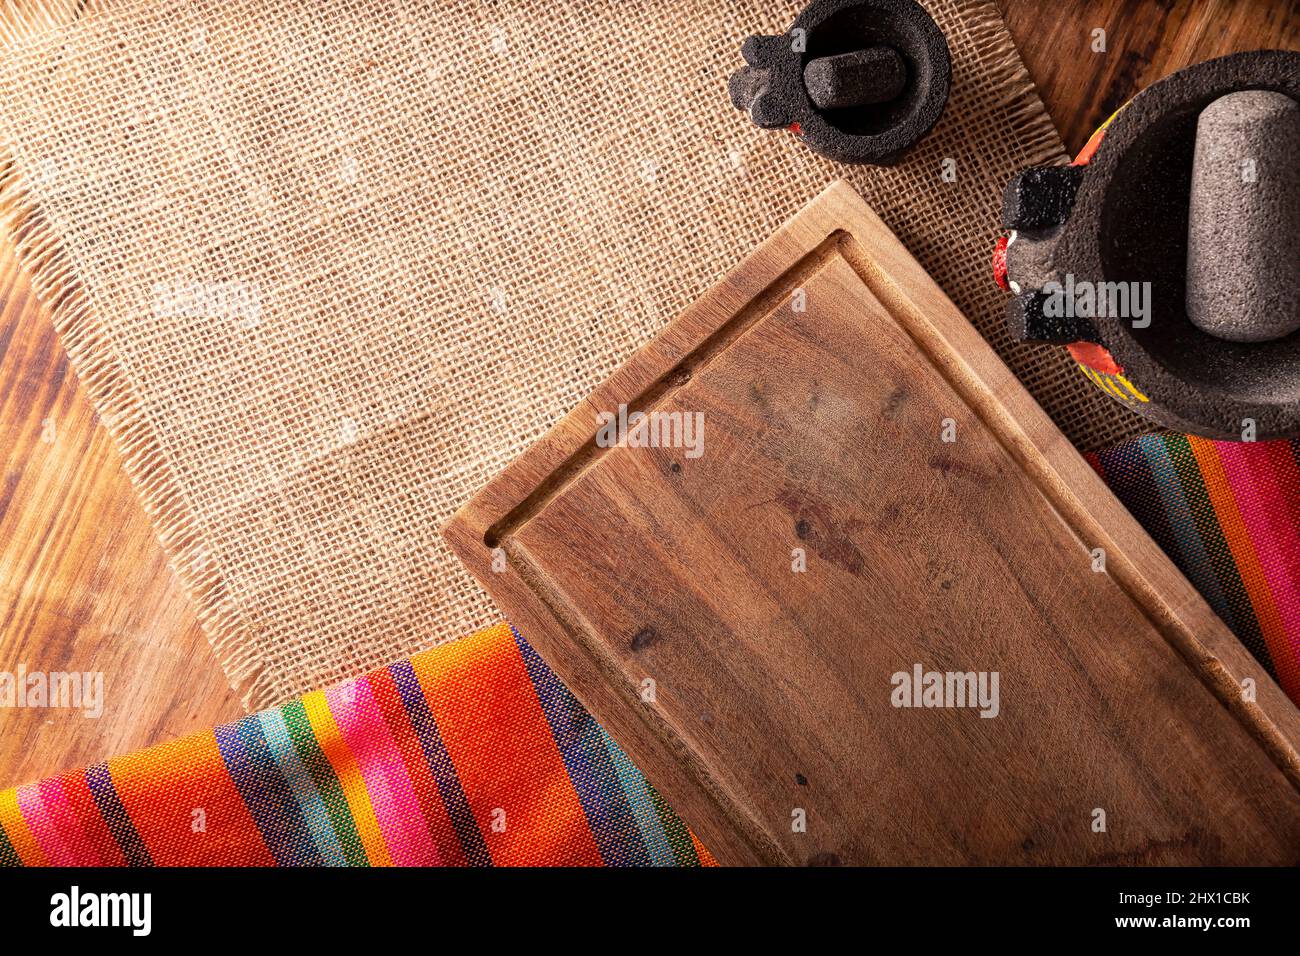 Cuisine mexicaine avec planche à découper vide, tissus traditionnels colorés et molajote sur table rustique en bois. Vue de dessus avec espace de copie. Banque D'Images